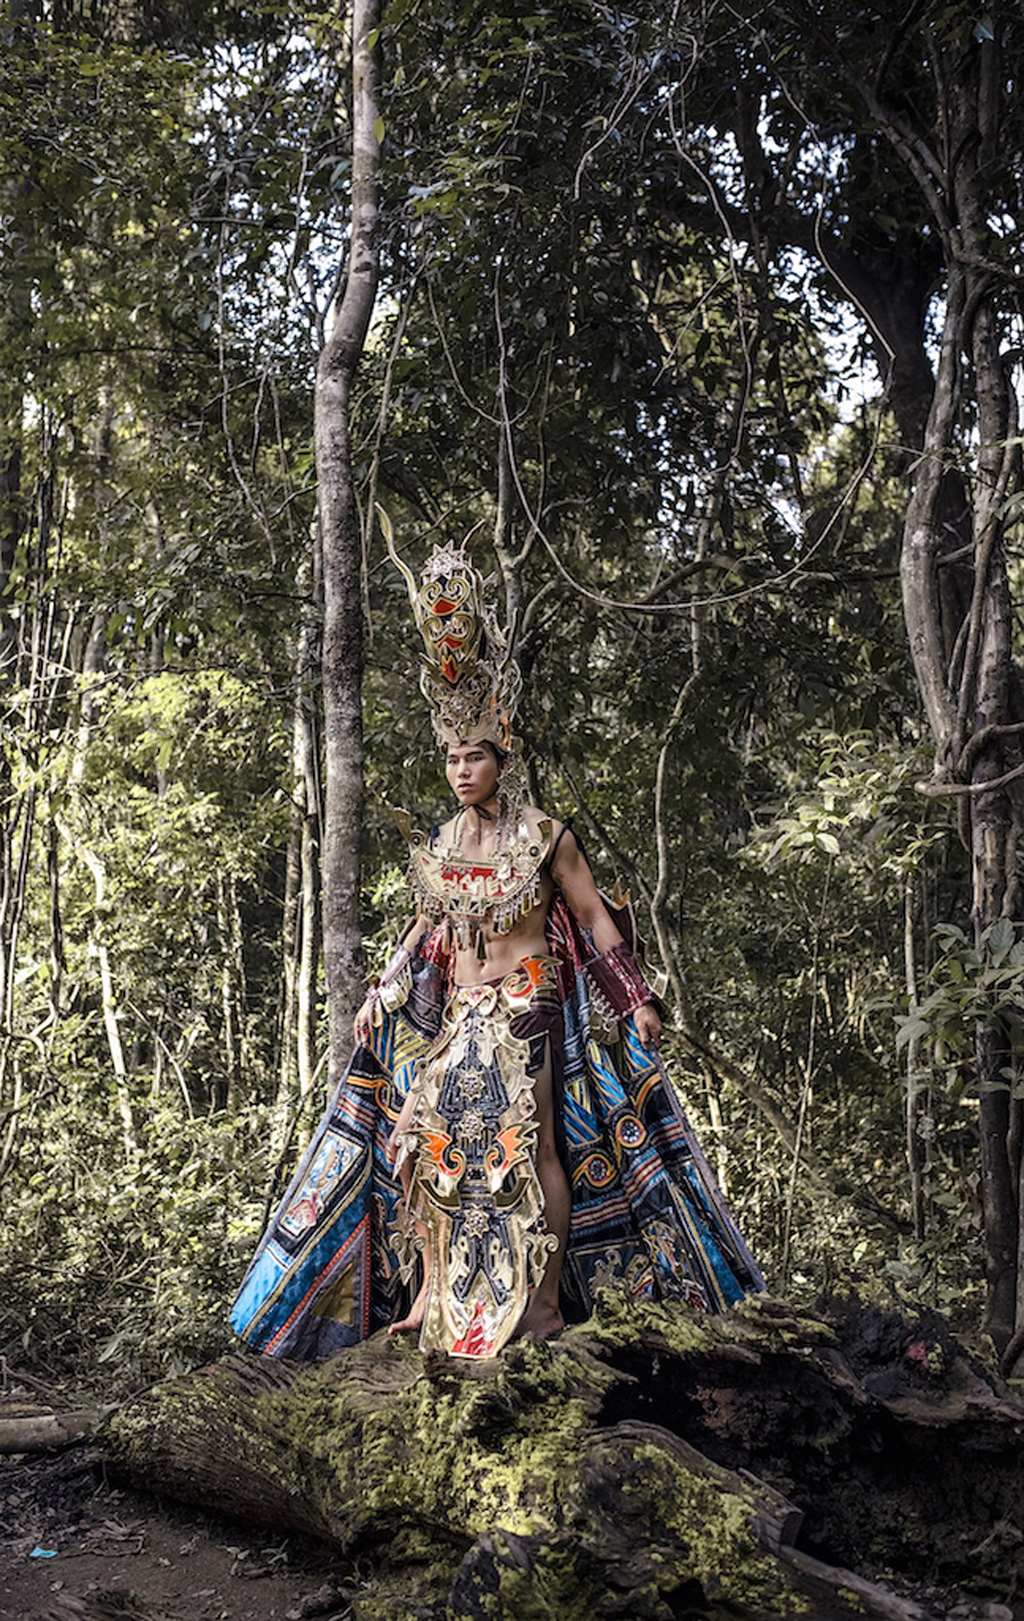 Siêu mẫu Ngọc Tình oai dũng trong trang phục dân tộc dự thi Nam vương Đại sứ Hoàn vũ 7